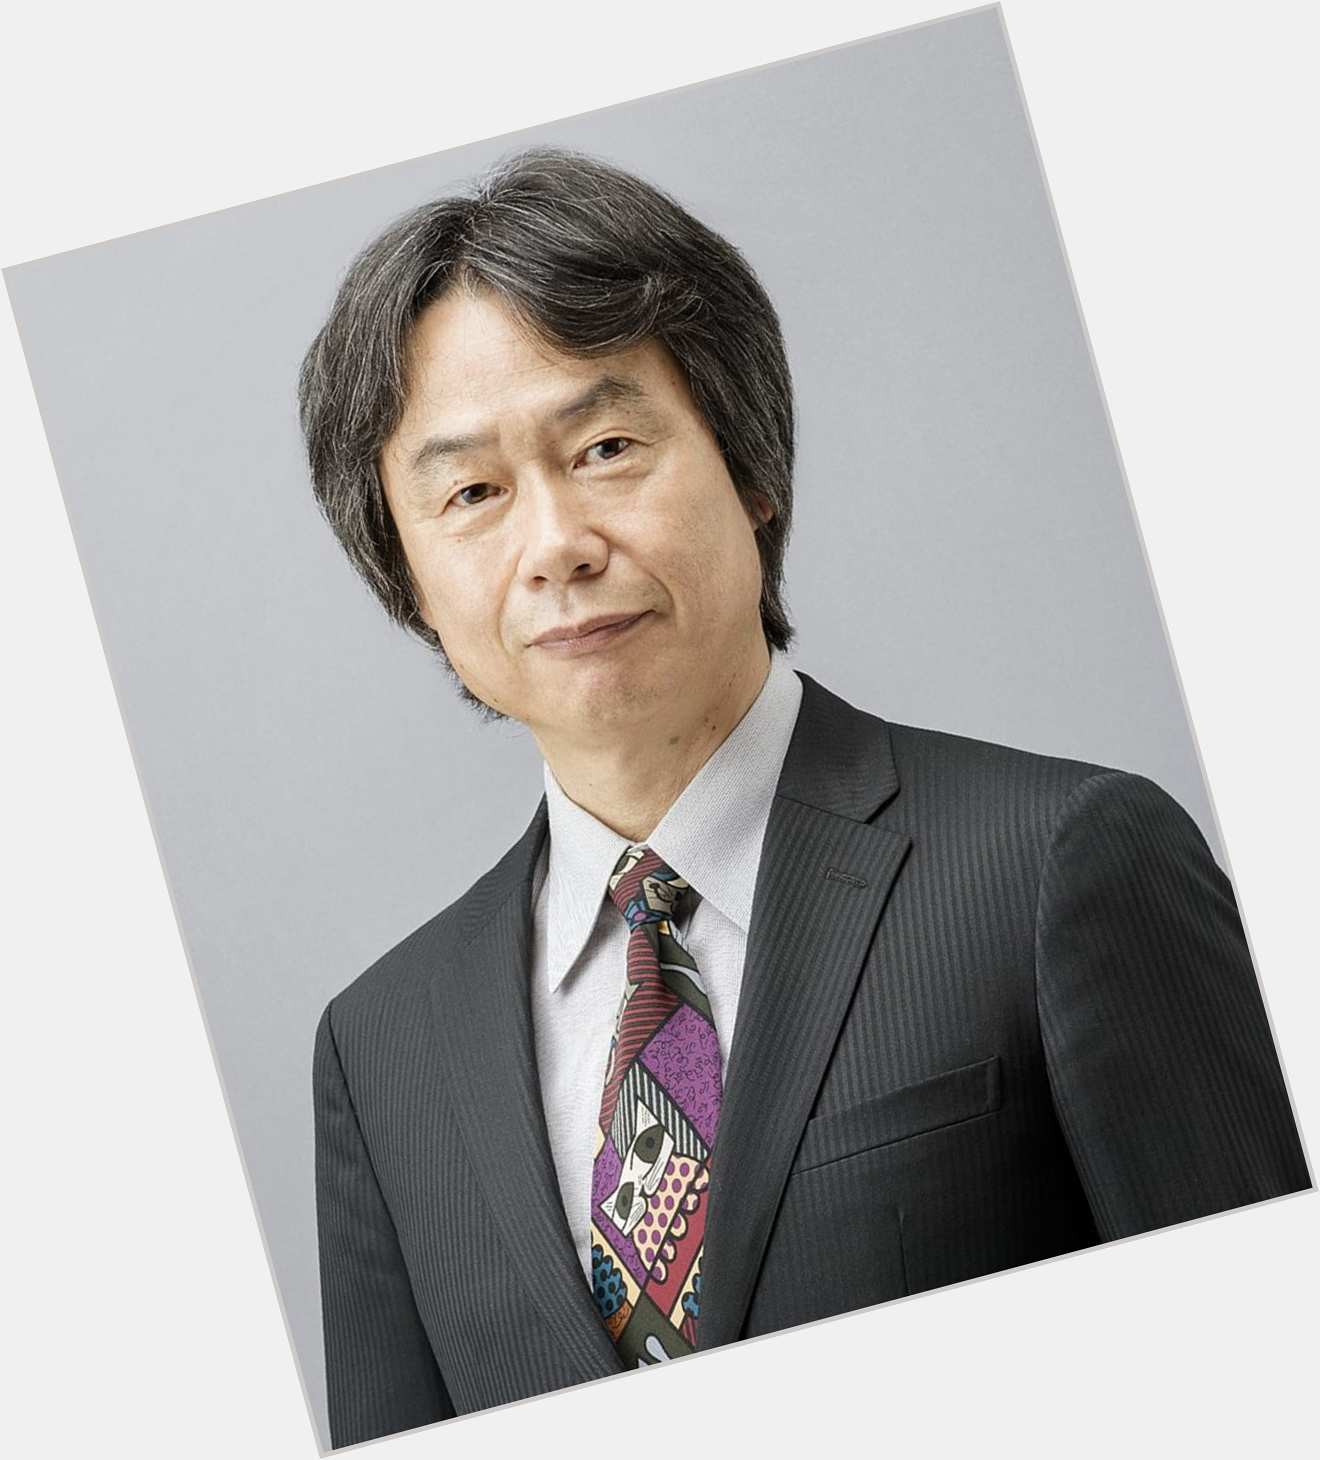 Http://fanpagepress.net/m/S/shigeru Miyamoto Sword 1